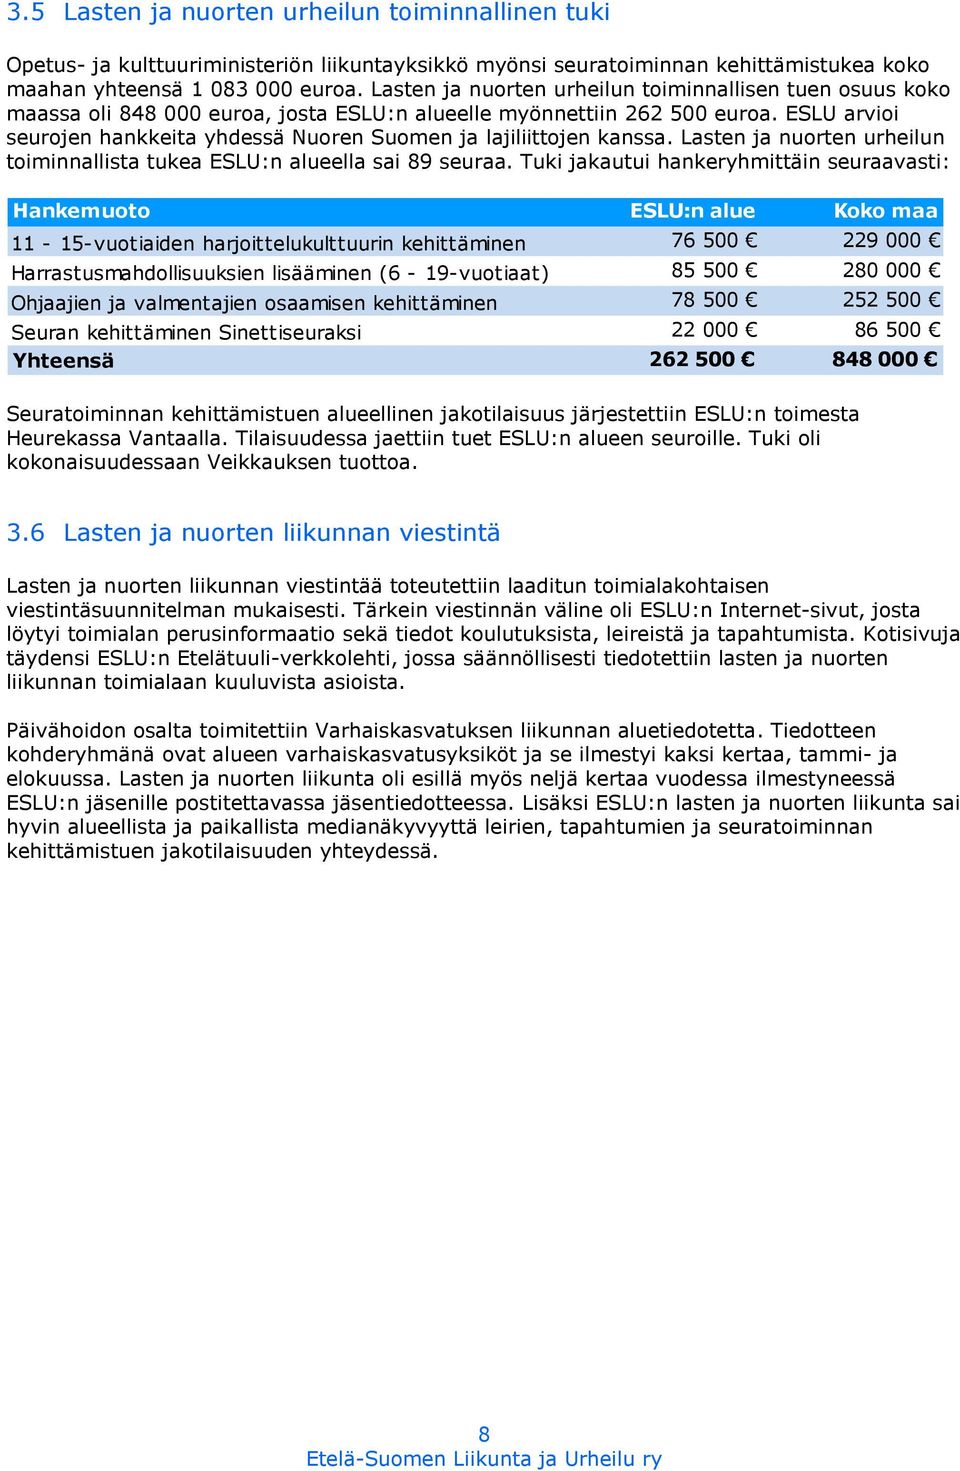 ESLU arvioi seurojen hankkeita yhdessä Nuoren Suomen ja lajiliittojen kanssa. Lasten ja nuorten urheilun toiminnallista tukea ESLU:n alueella sai 89 seuraa.